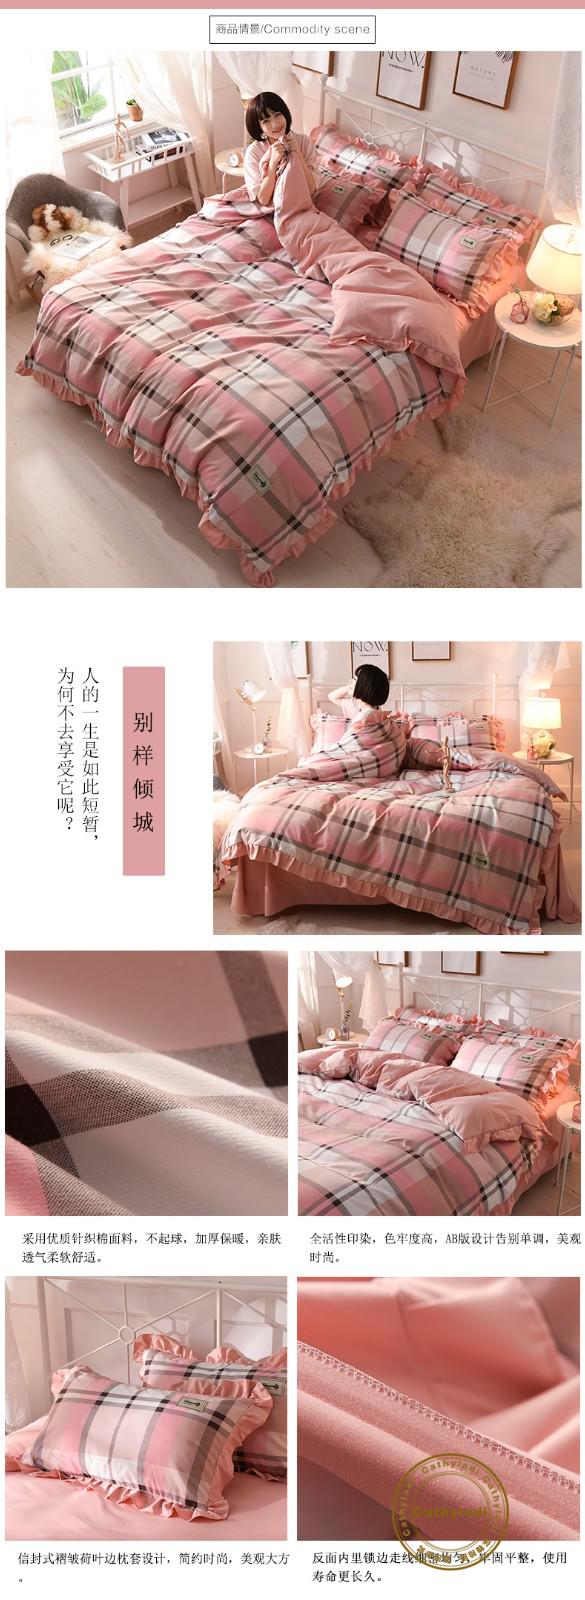 CATHYLADIベッドの上で4つのセットの純綿のすり毛のシーツは韓国版のレースins王女風の純色のメリヤスの綿のベッドの品物のセットの寝具の